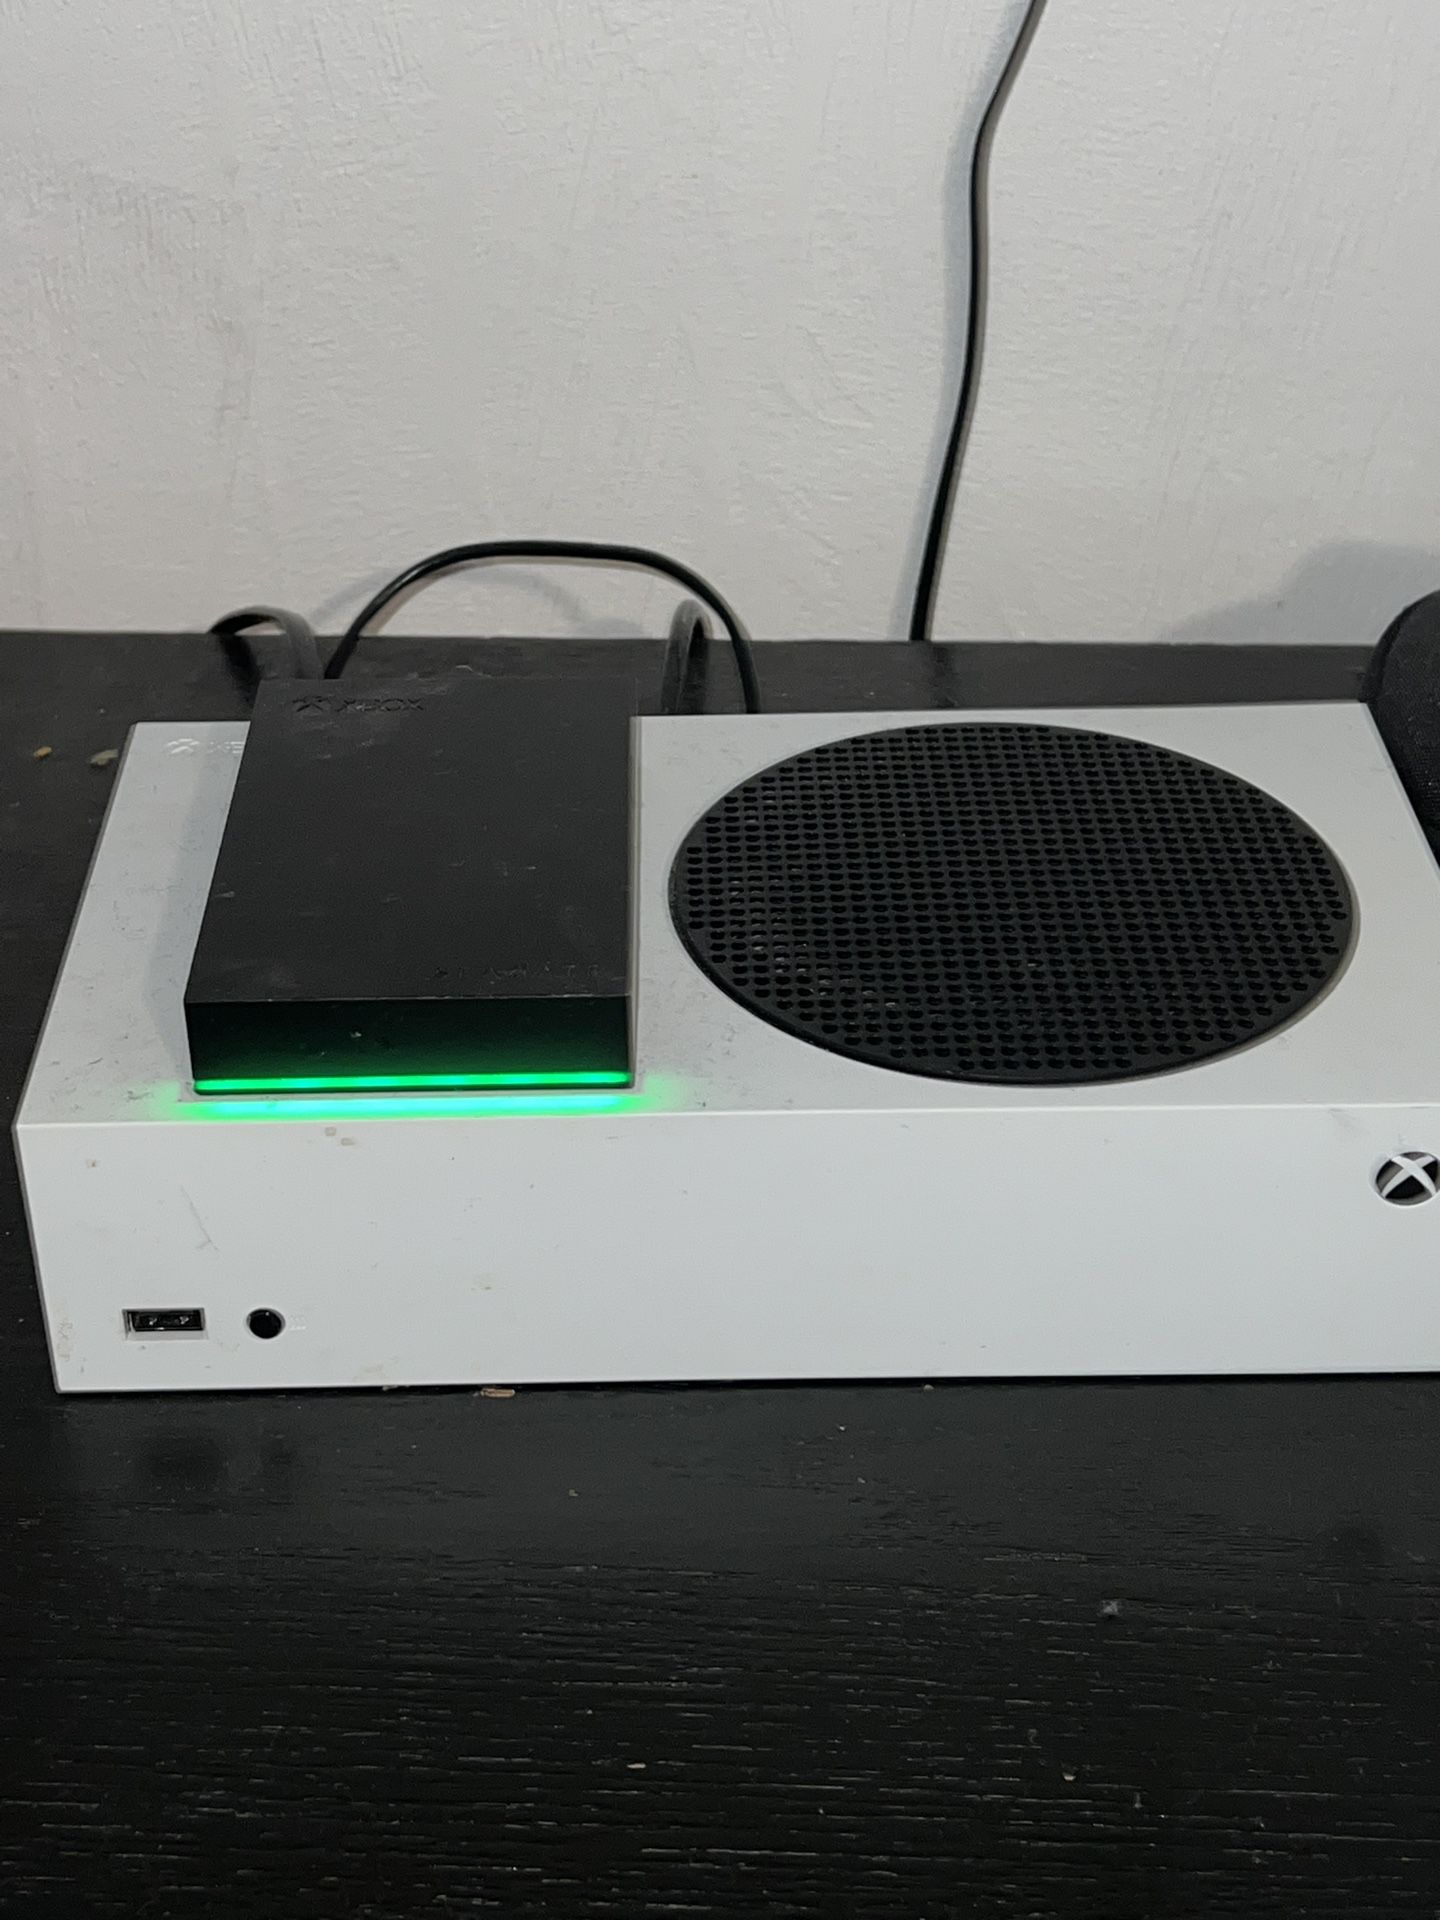 Xbox Series S 